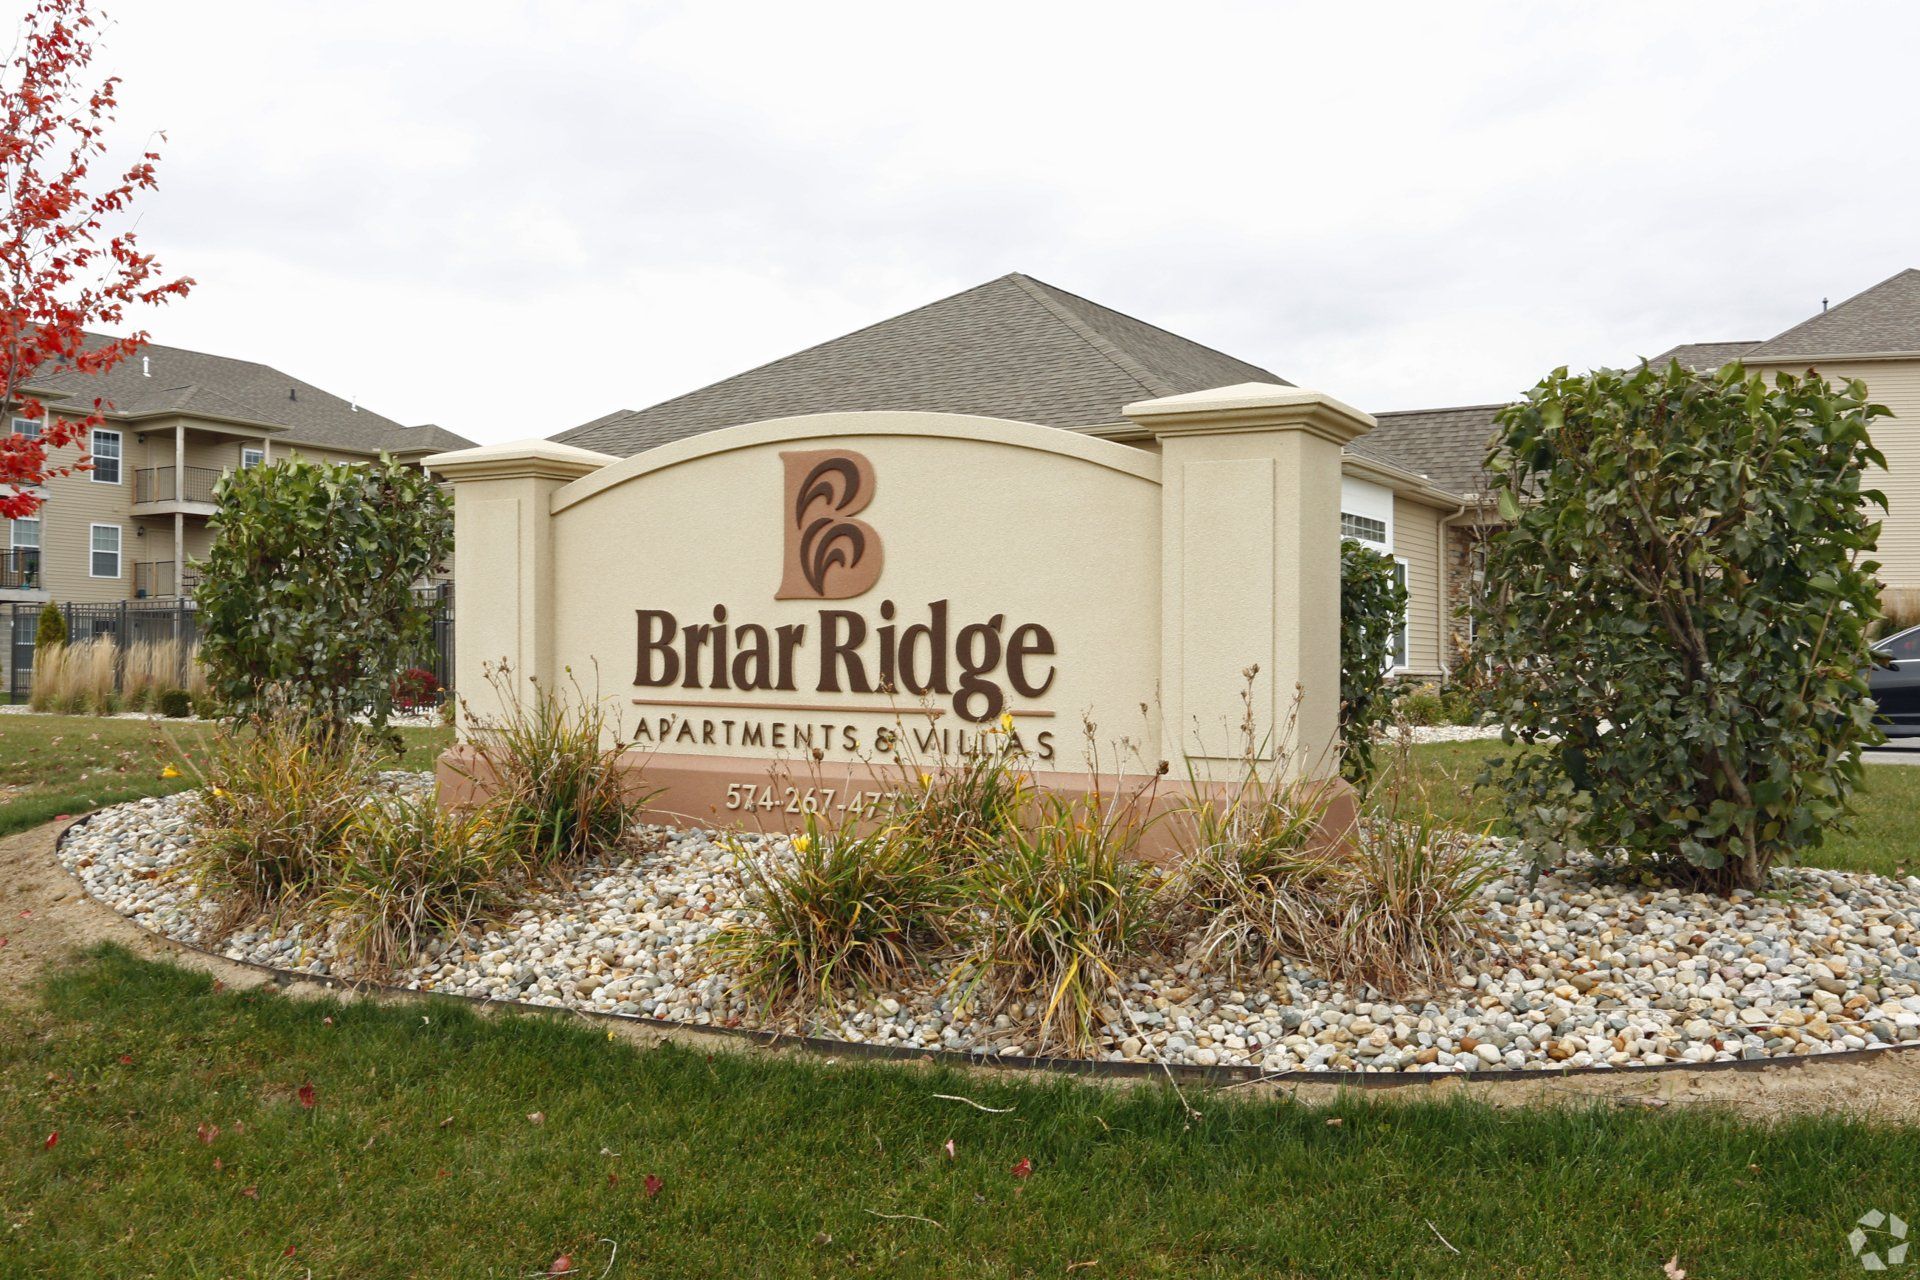 Thumbnail of Briar Ridge Apartments and Villas